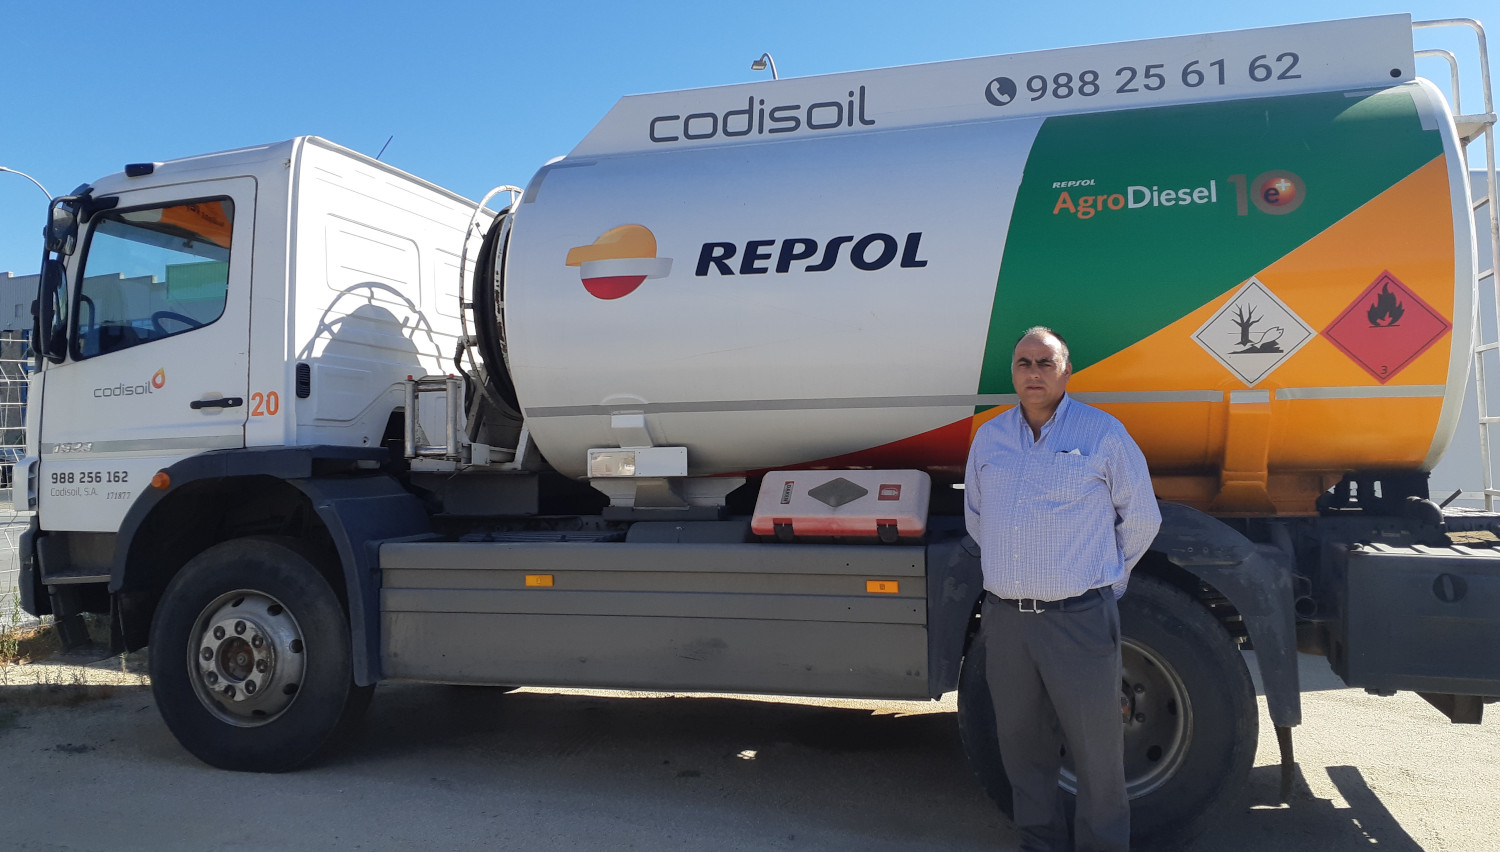 “O gasóleo agrícola de Repsol rende máis e coida da maquinaria”